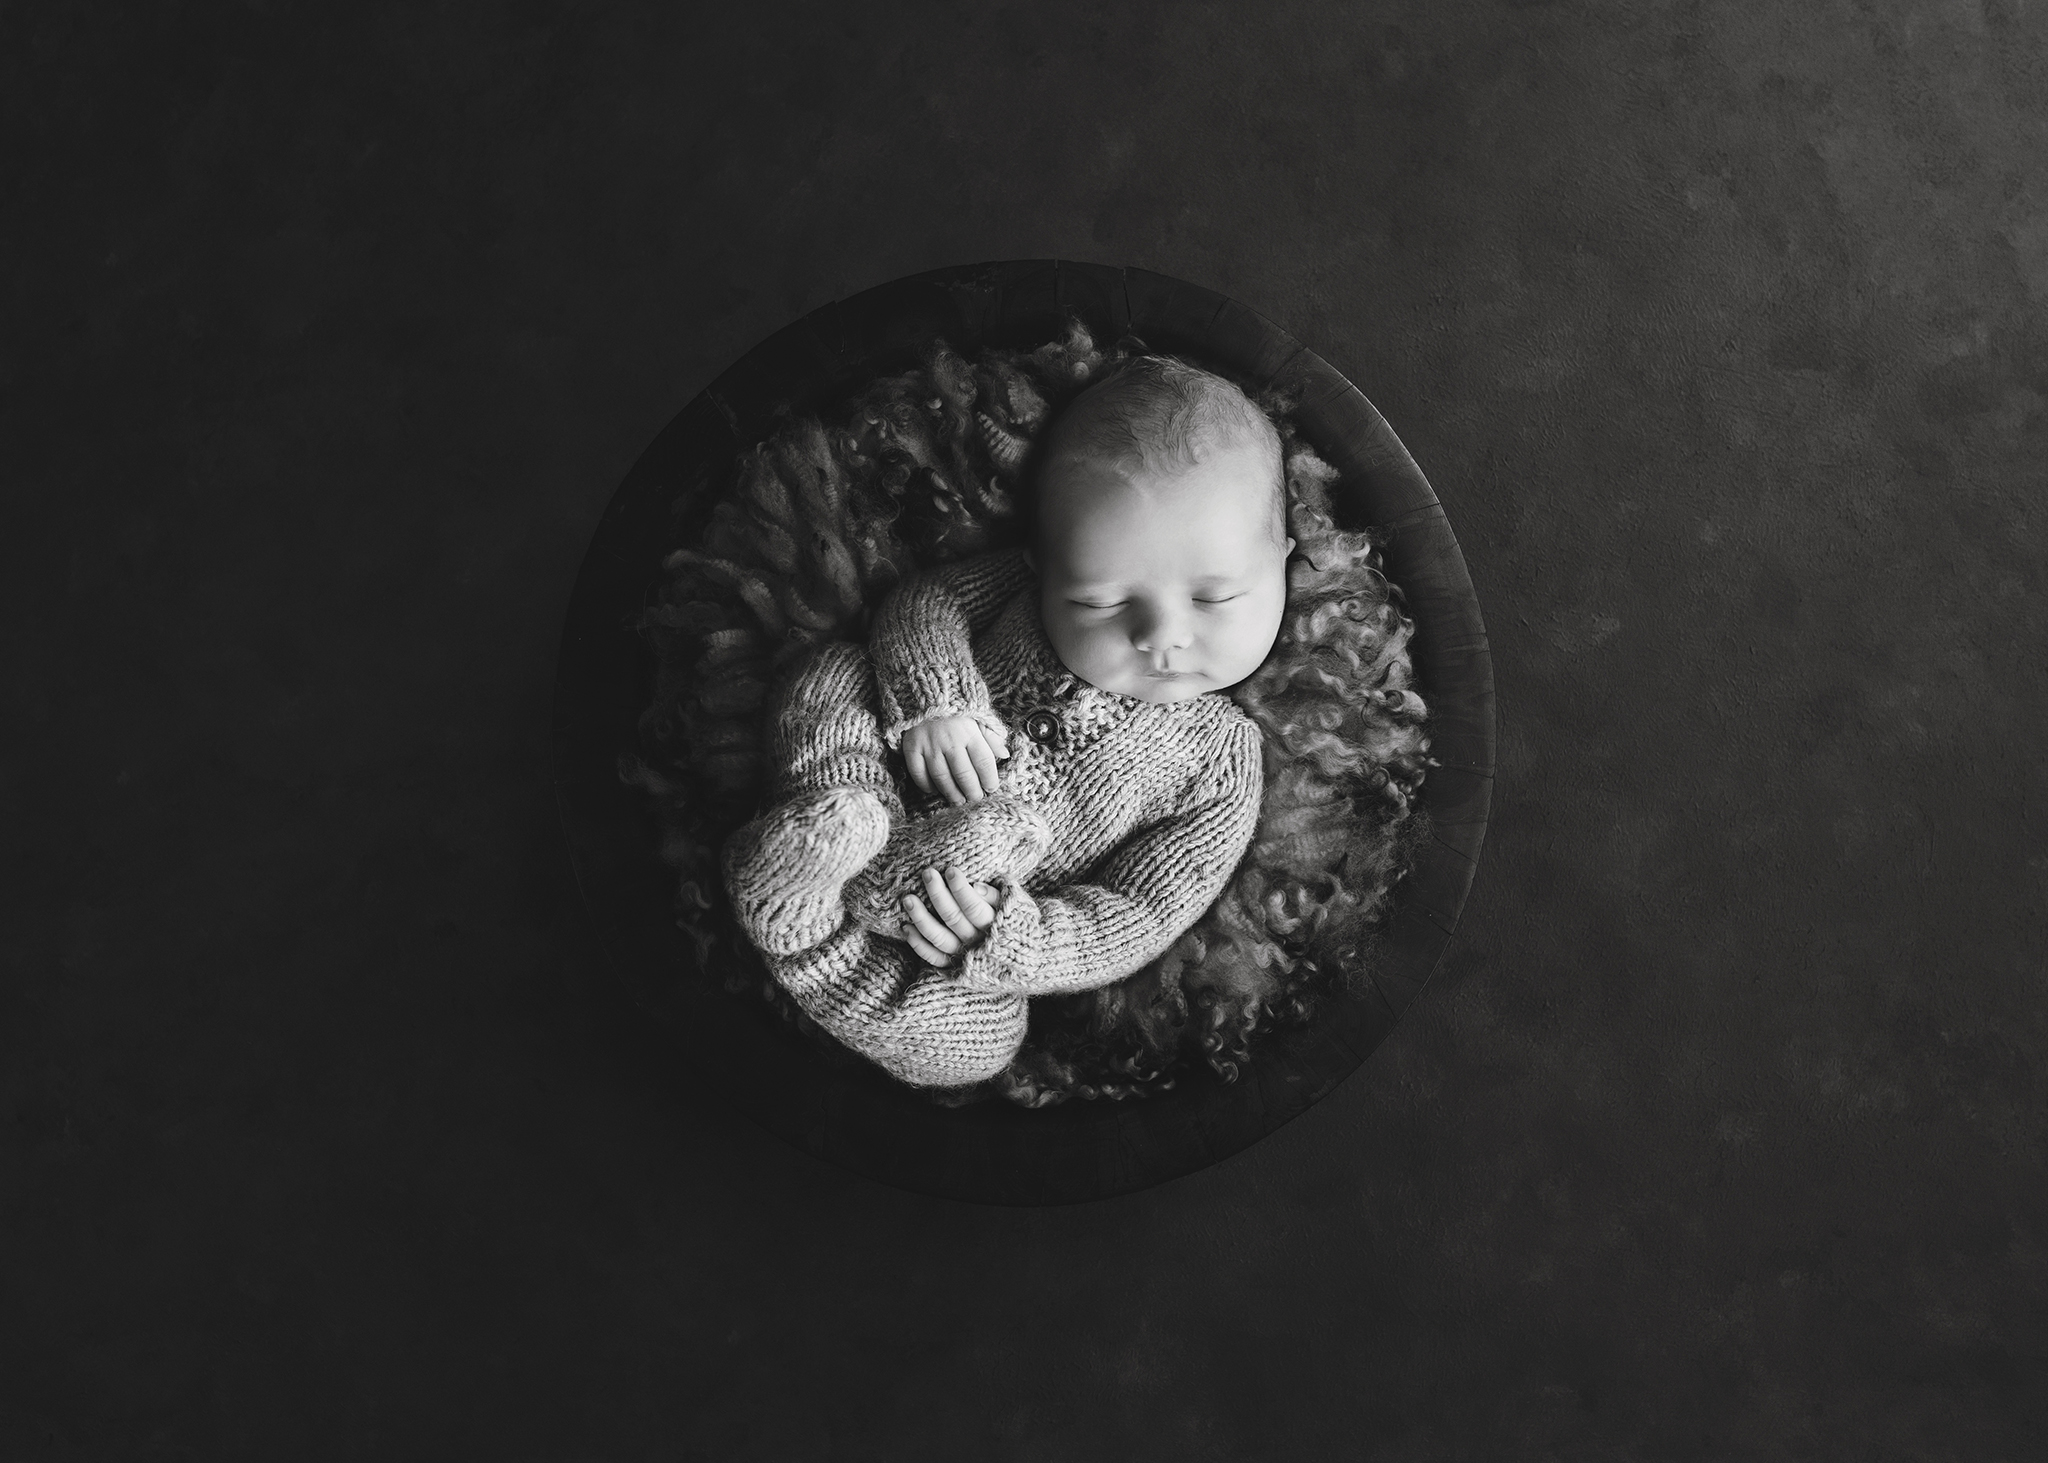 Edmonton Newborn Photographer_Baby Bennett 2019 4.jpg